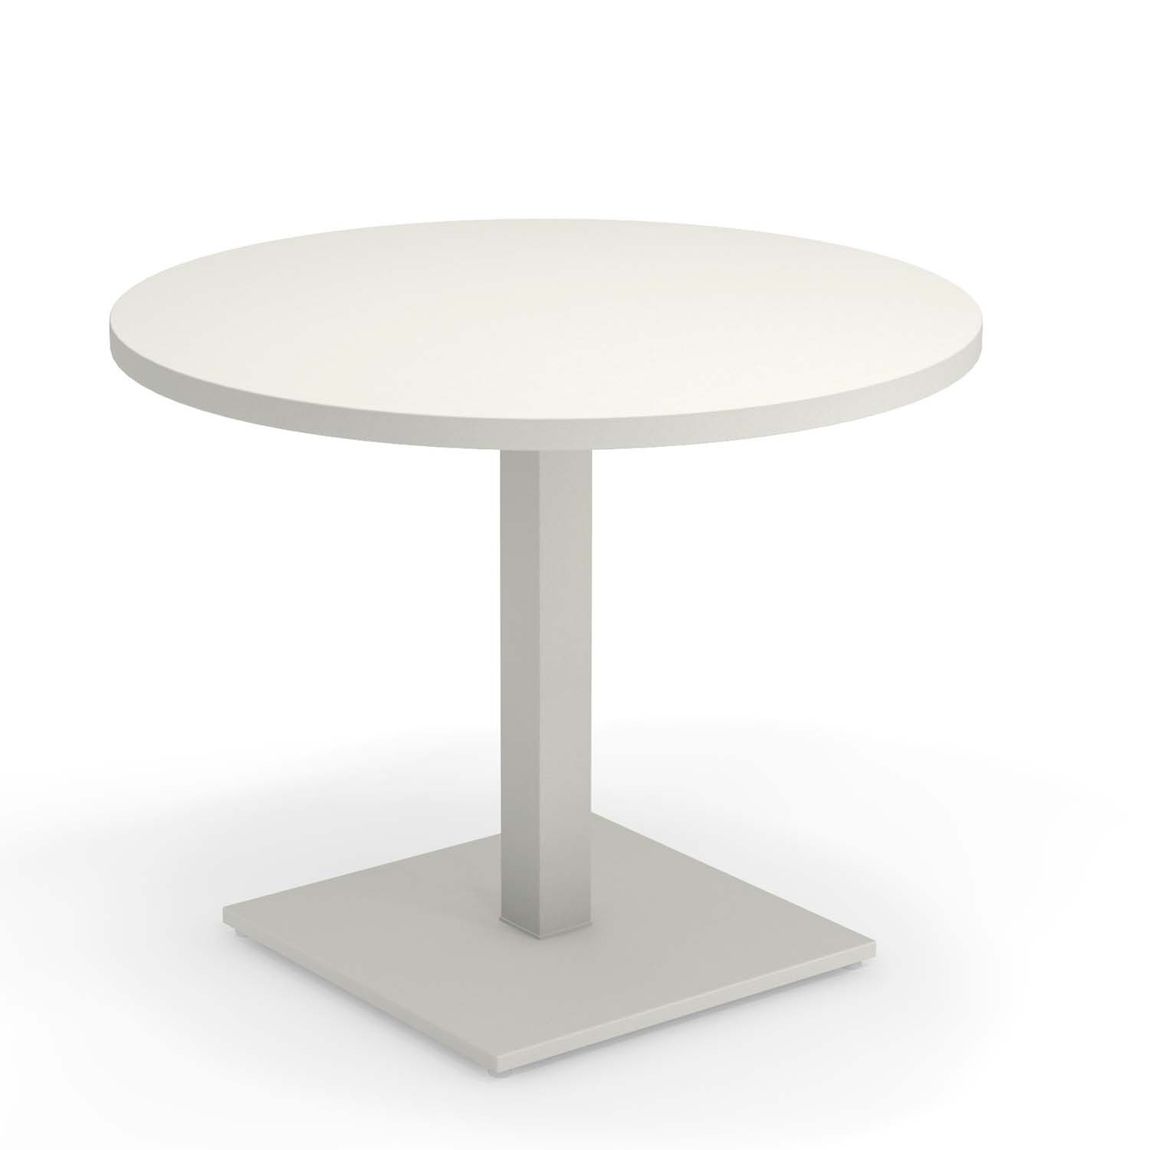 Emu - Round Tisch H 75 Cm, Ø 90 Cm, Weiß